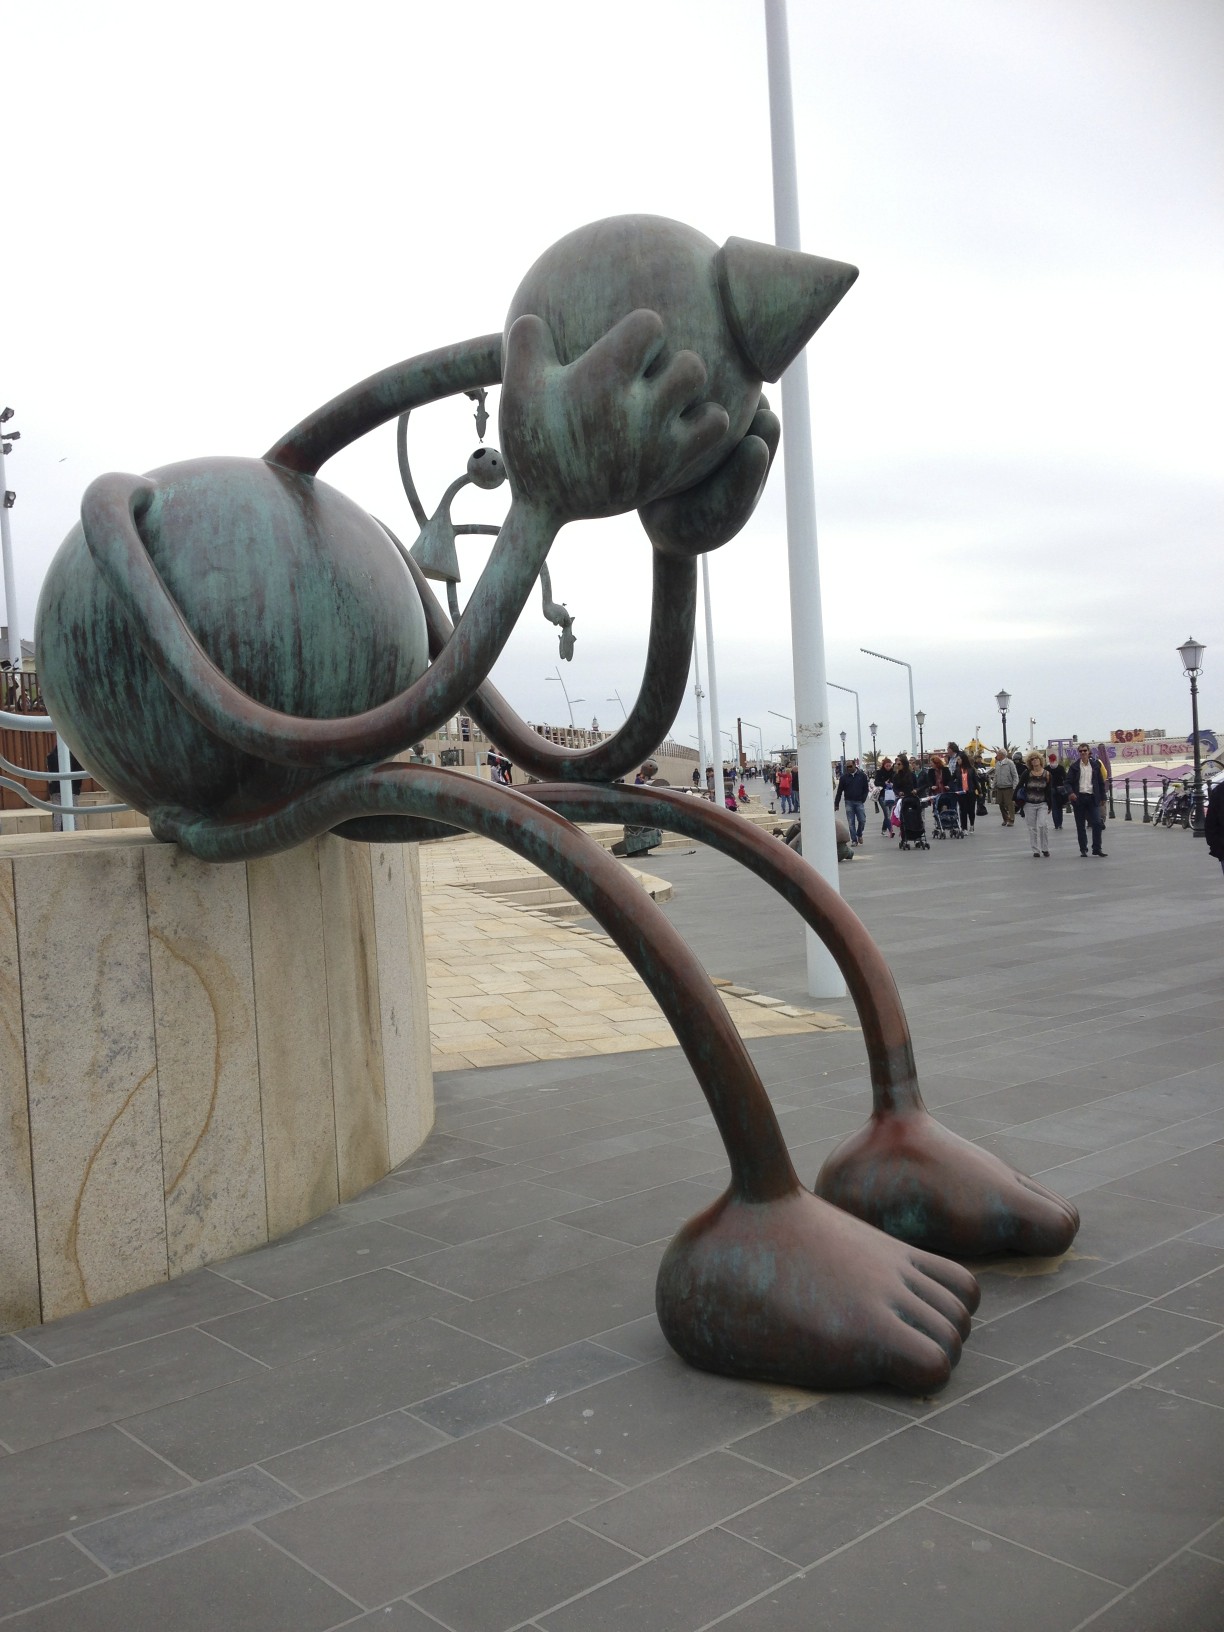 Sculptures and Sea Creatures in Scheveningen, The Hague - Traveling Mom